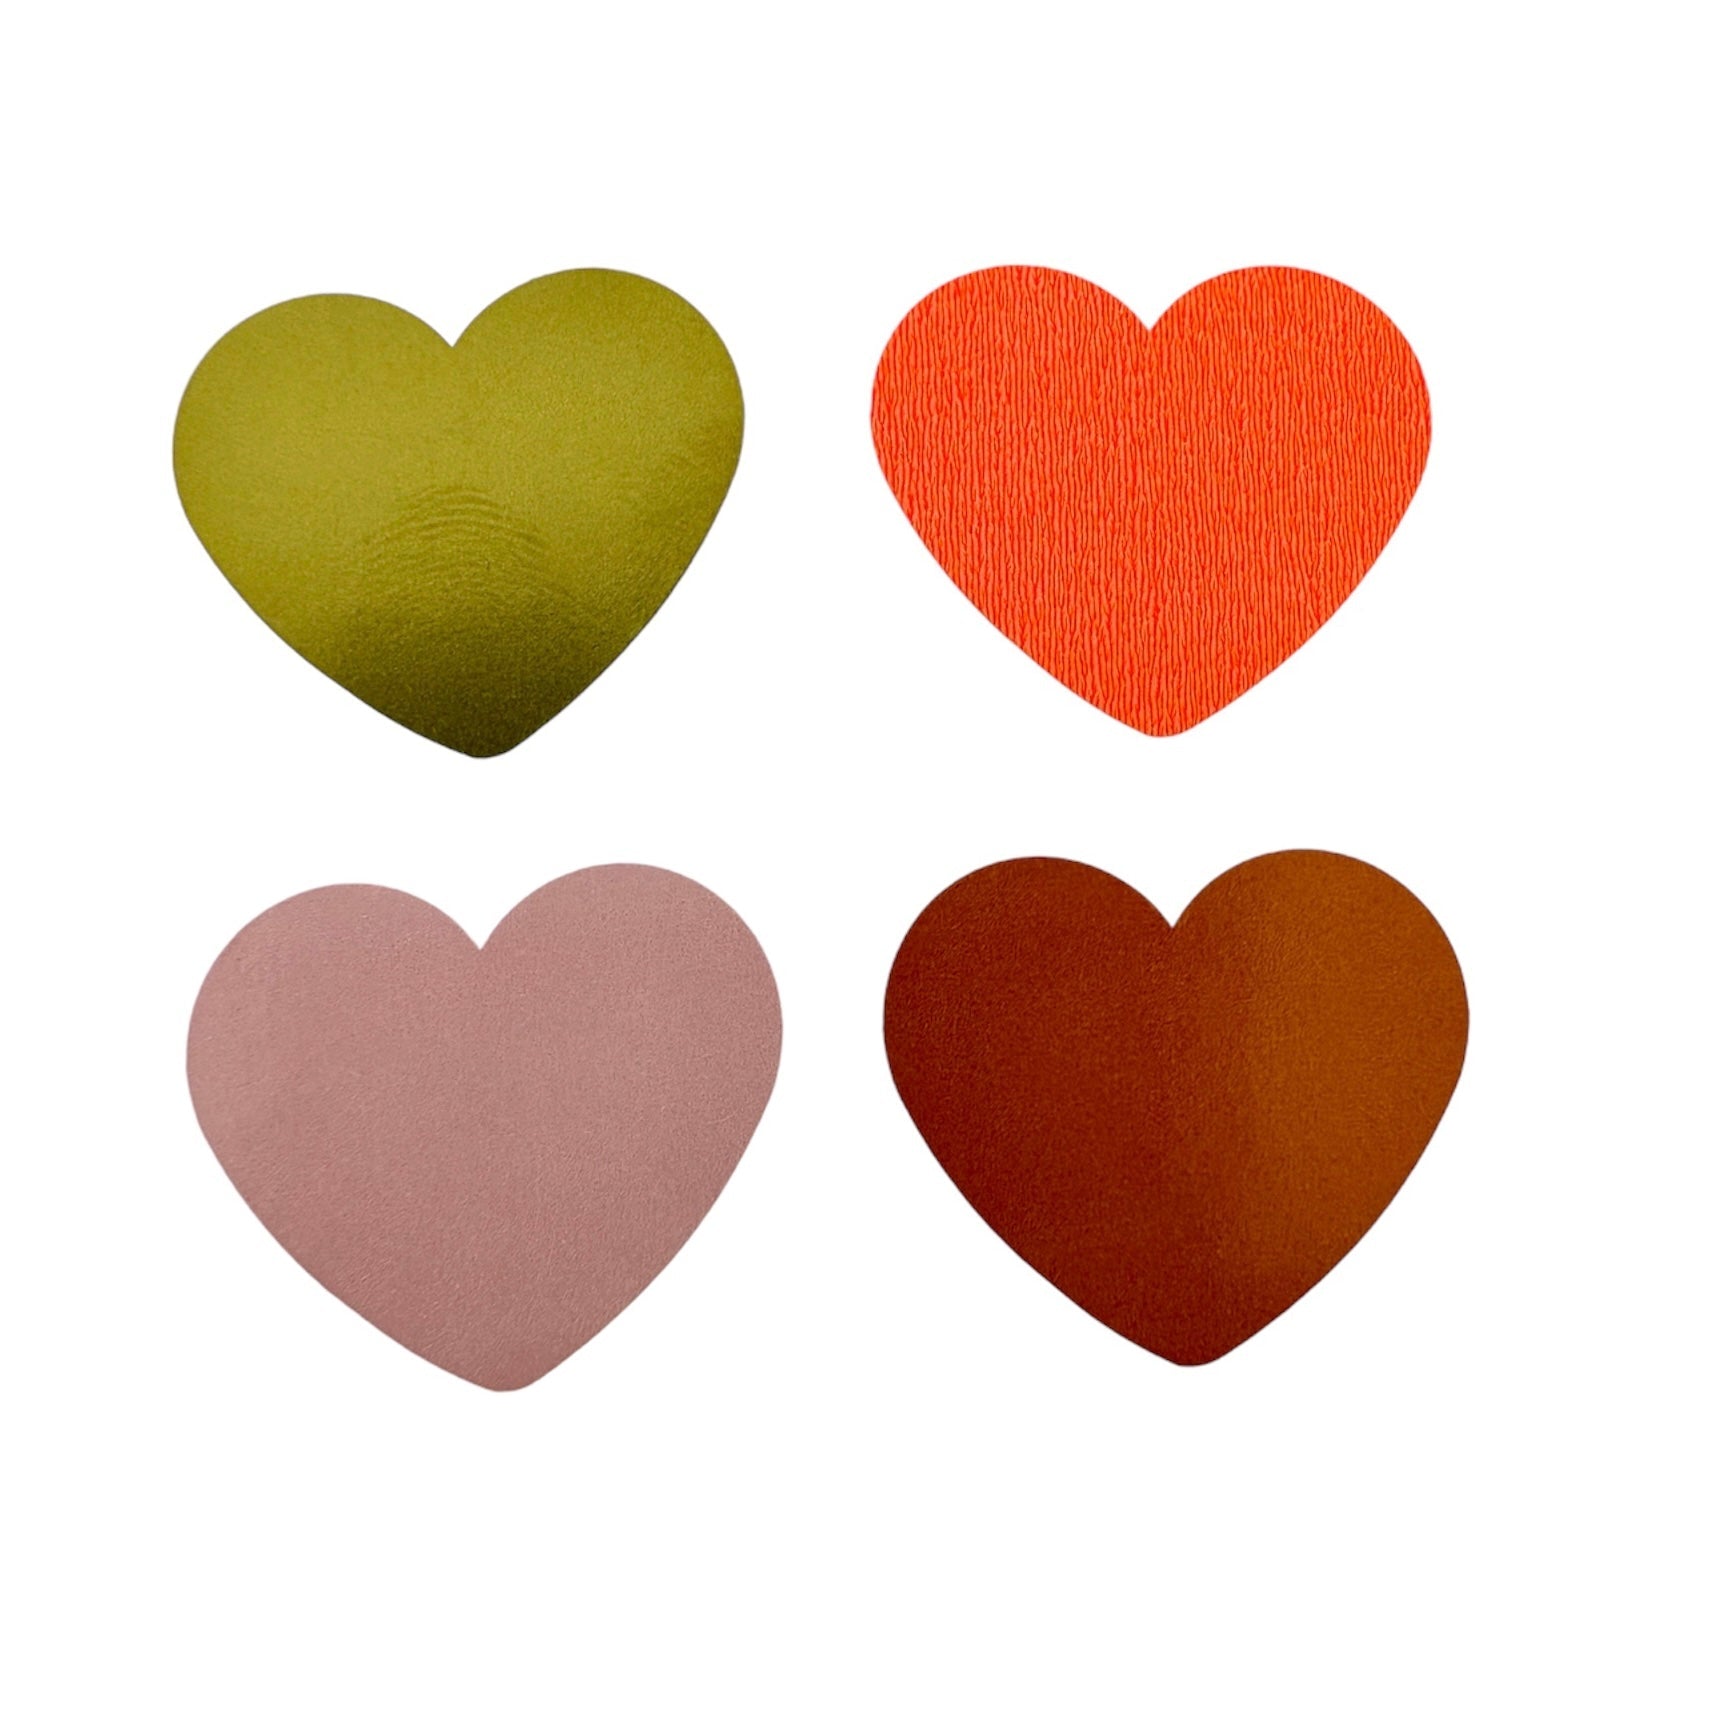 Stickers - Mini Gold Heart Multicolor 27mm - 10 stuks-Gifts-Kraaltjes van Renate